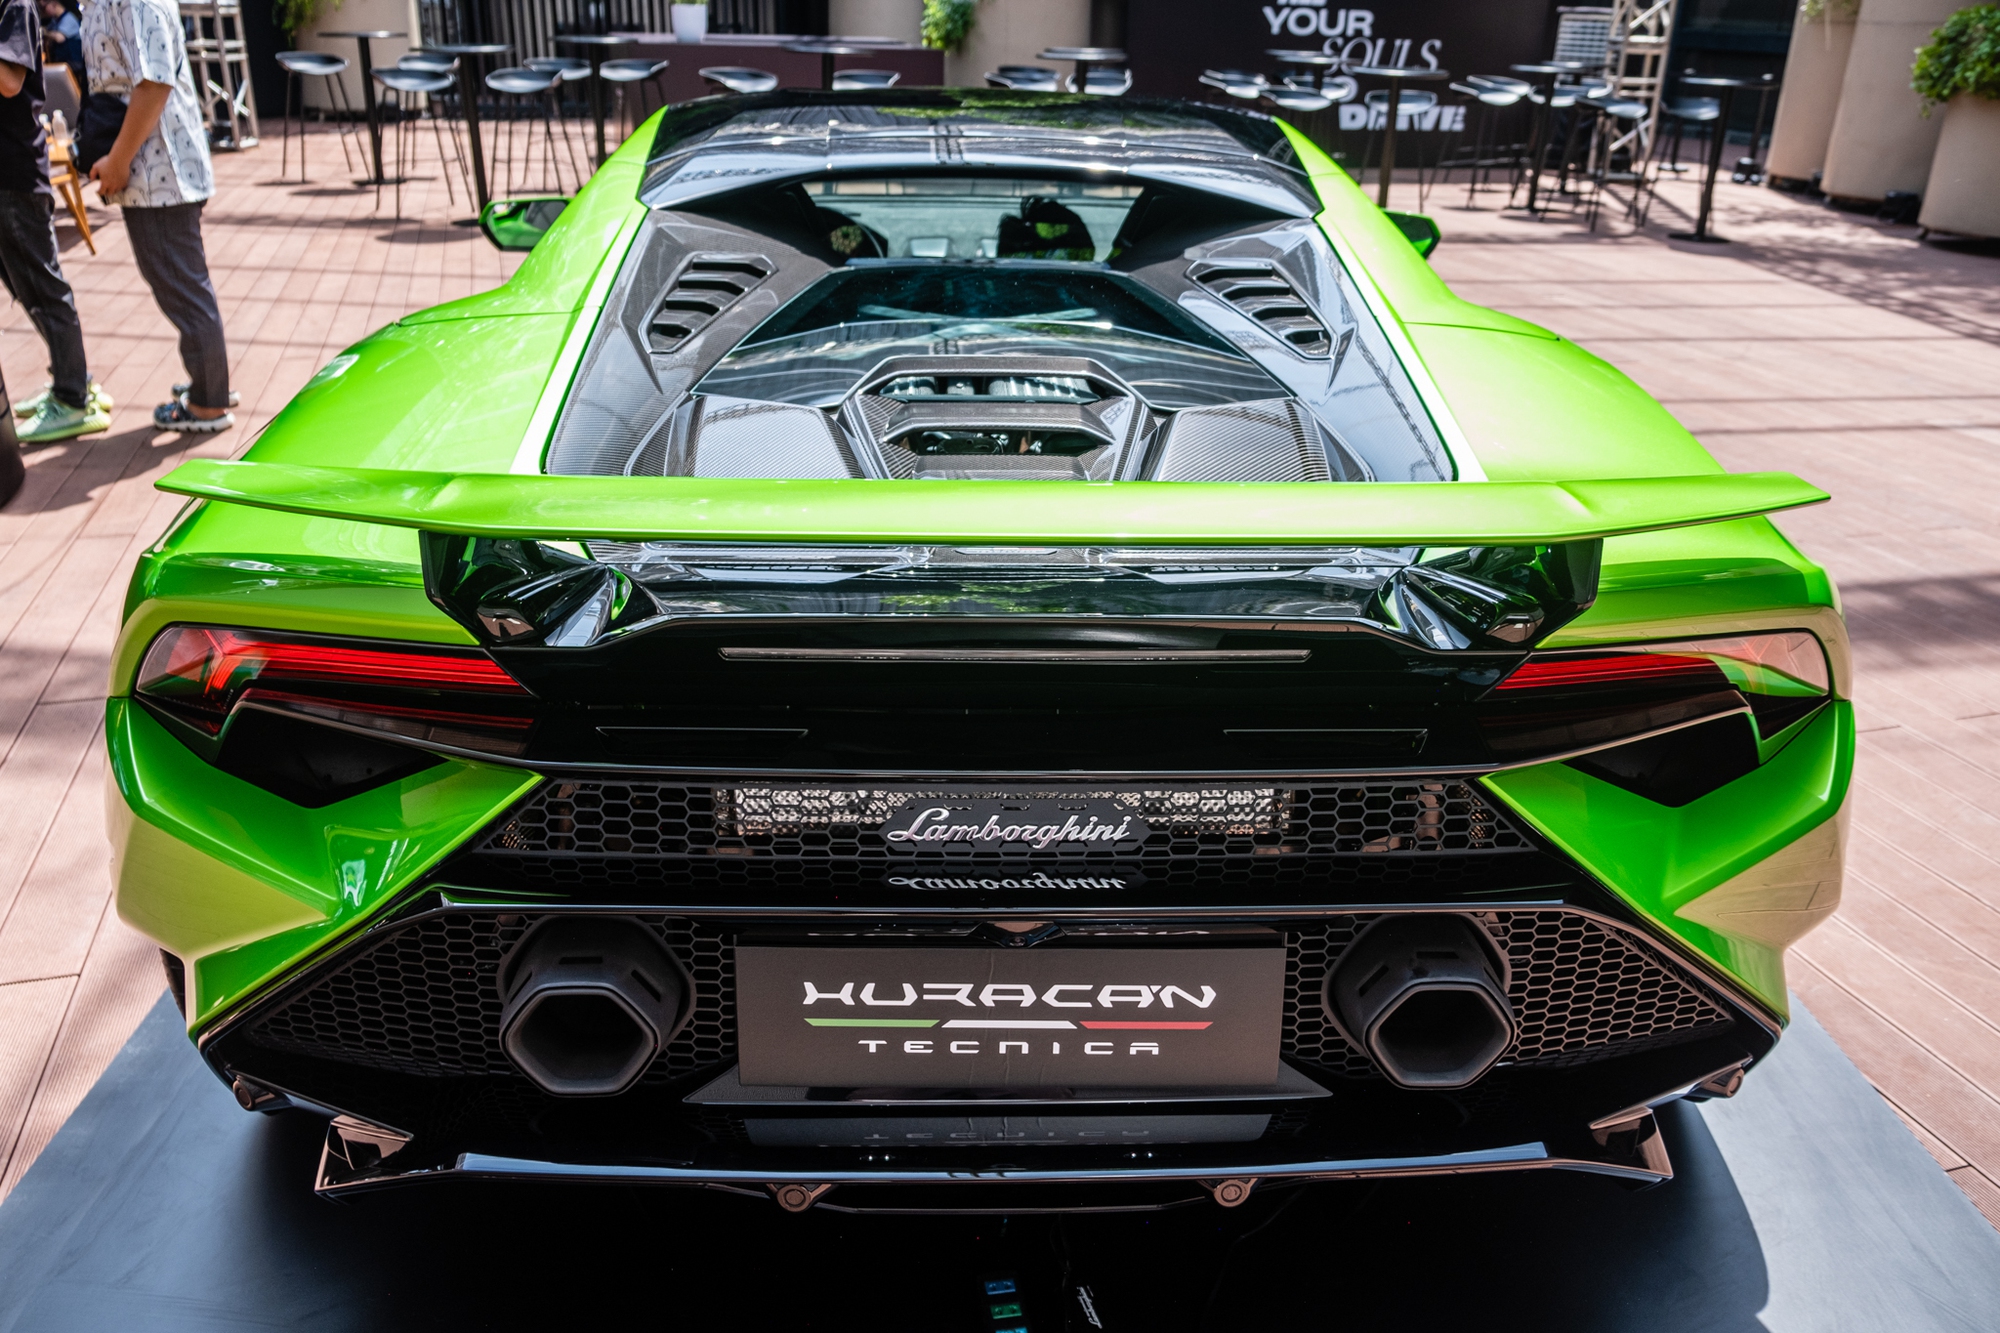 Chi tiết Lamborghini Huracan Tecnica giá từ 19 tỷ đồng tại Việt Nam - Ảnh 7.